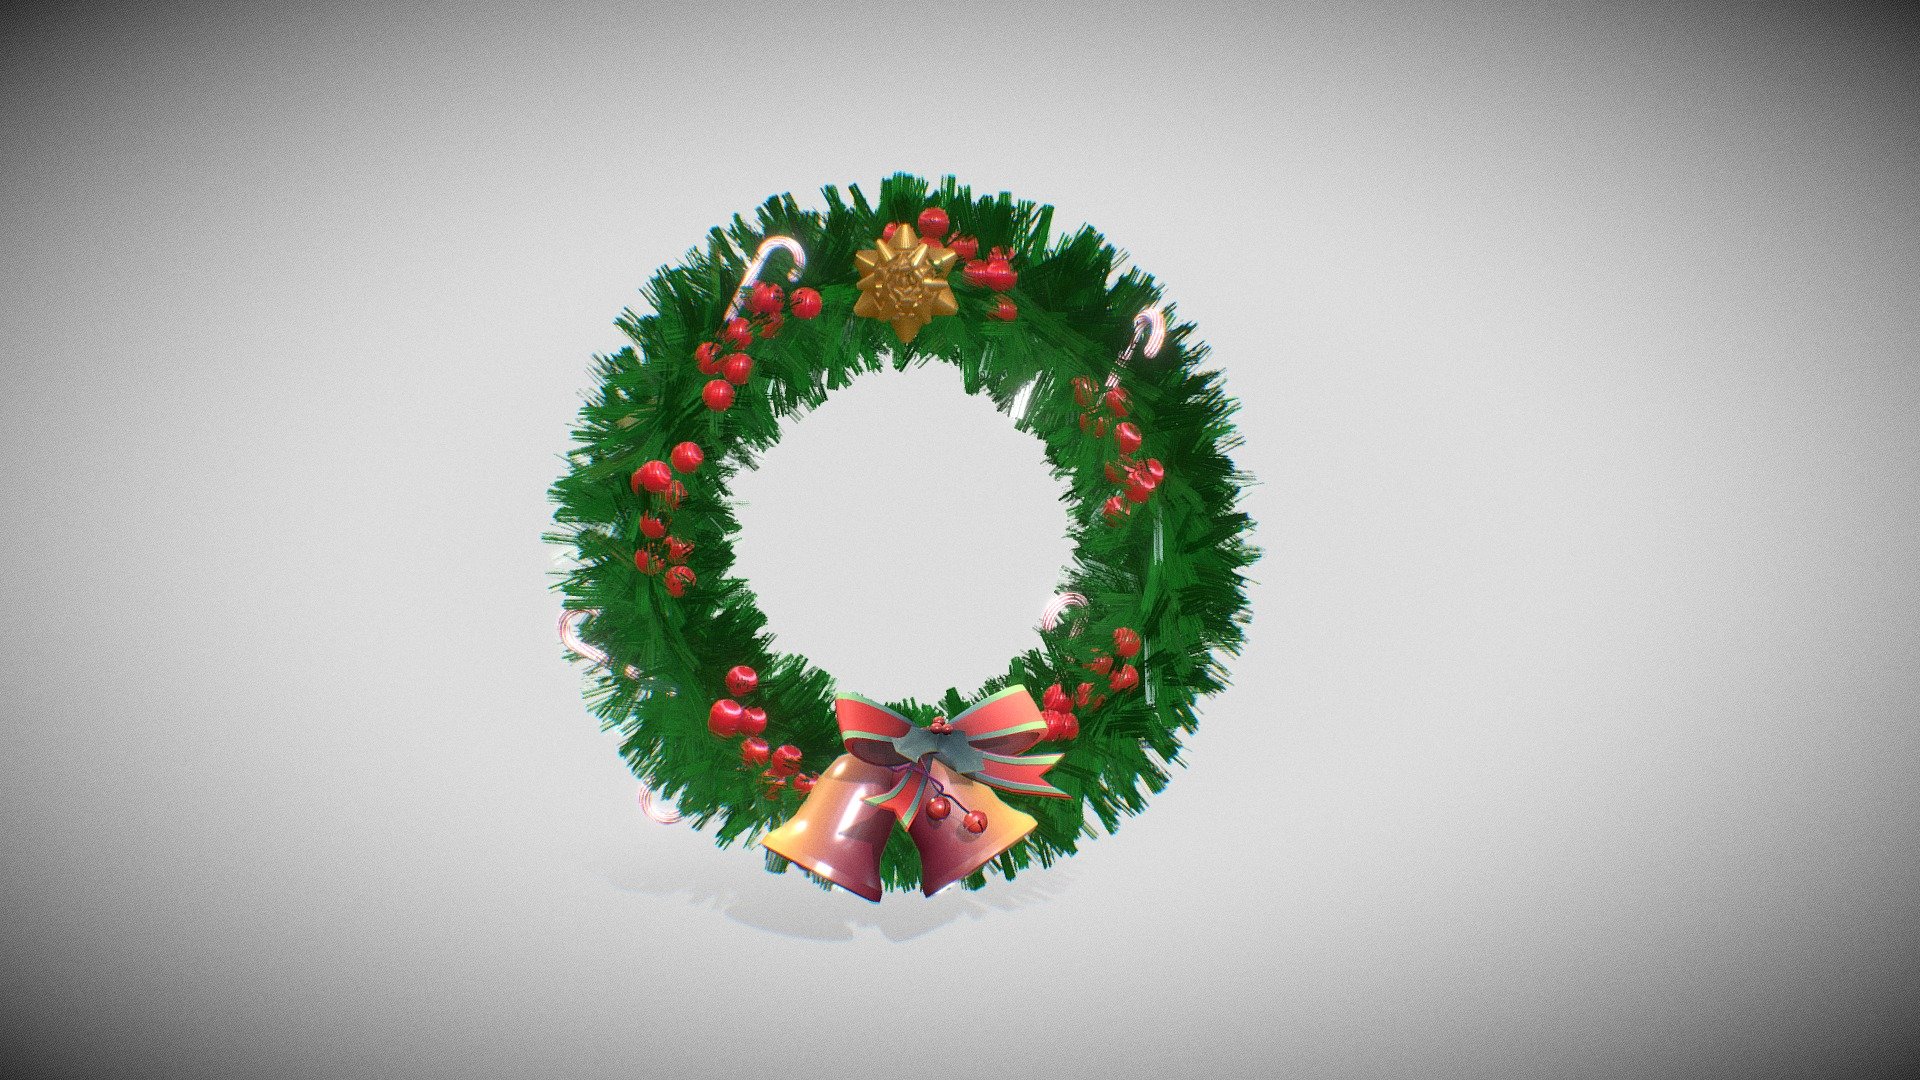 simple pero funcional, espero te funcione.
en este archivo utilice el modelado gratuito de las campanas de @zhixson, muchas gracias - Christmas wreath - 3D model by Osmany.Areas 3d model